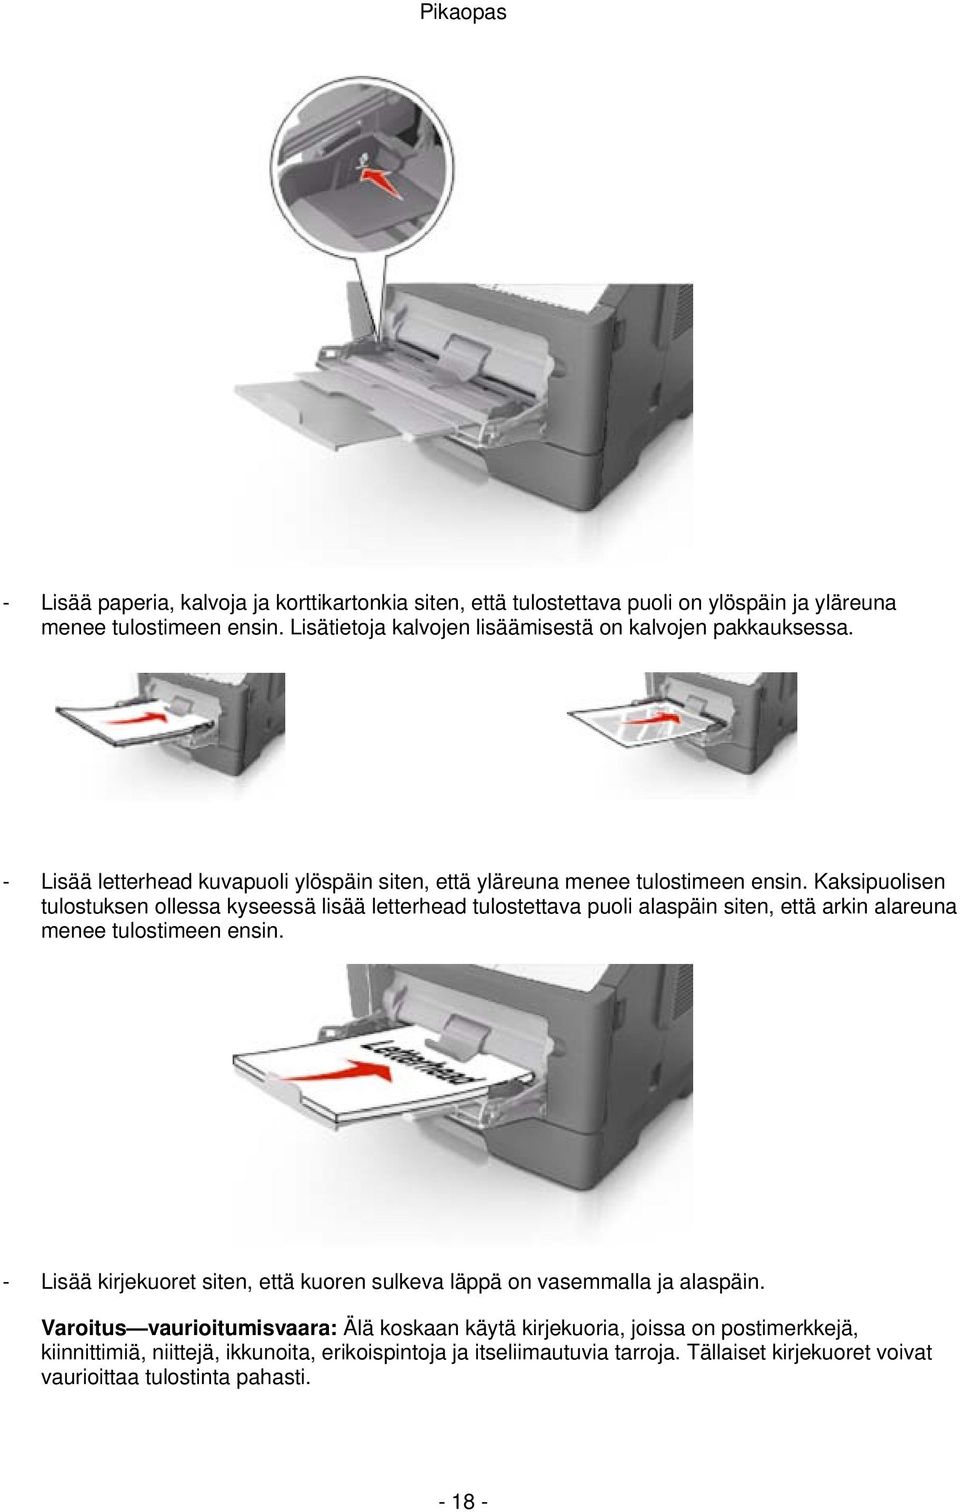 Kaksipuolisen tulostuksen ollessa kyseessä lisää letterhead tulostettava puoli alaspäin siten, että arkin alareuna menee tulostimeen ensin.